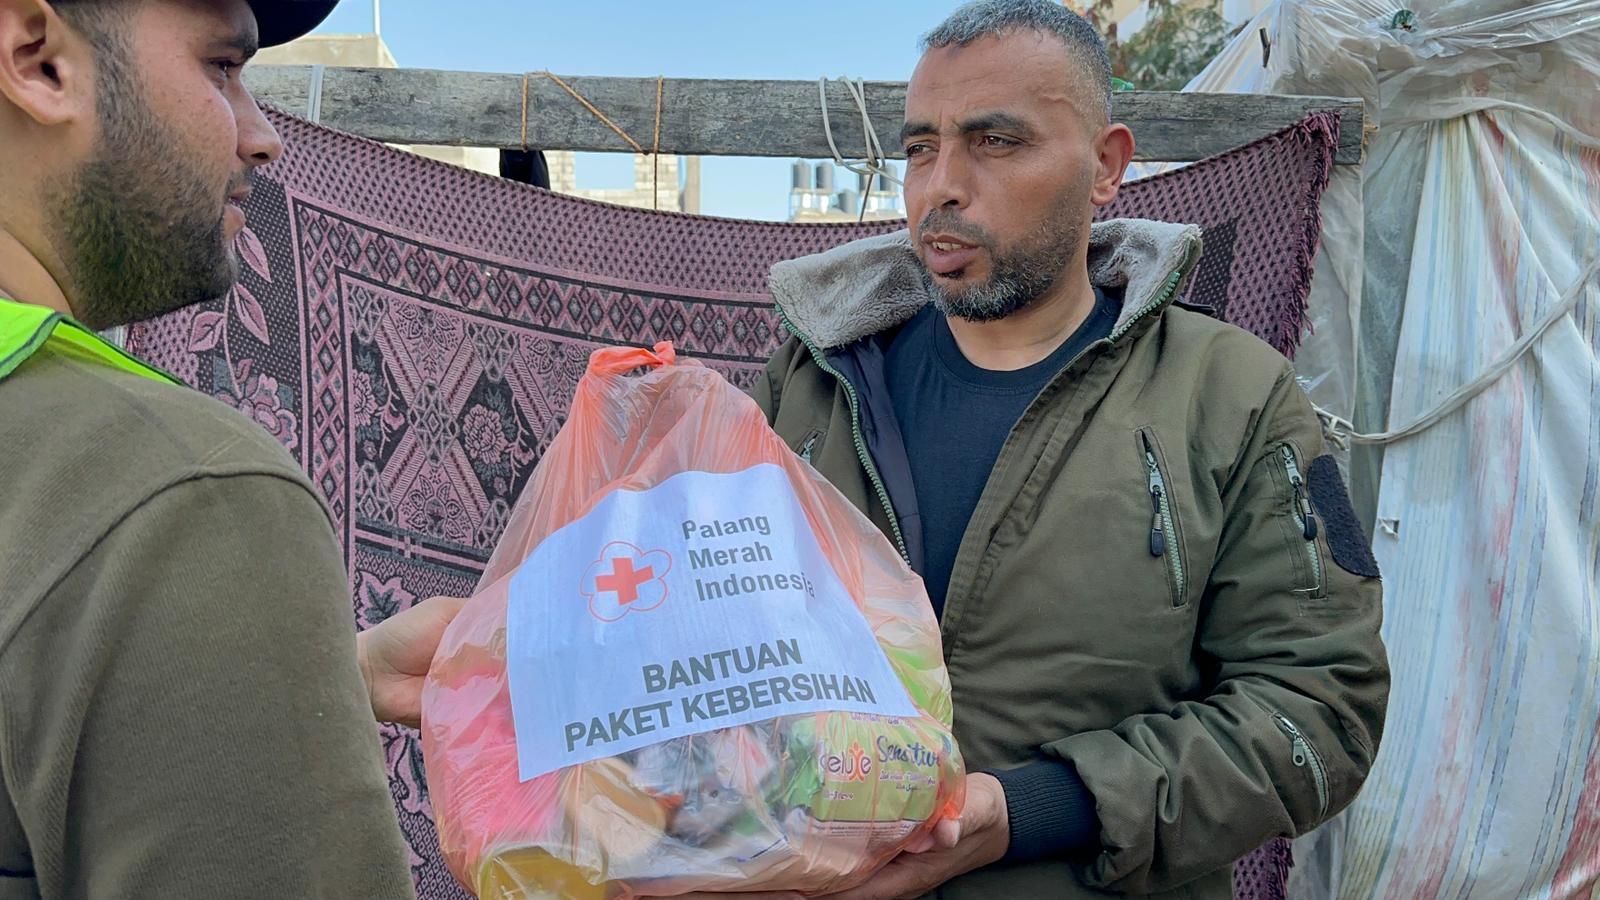 PMI Kembali distribusikan Paket Kebersihan  kepada Pengungsi di Afara Gaza